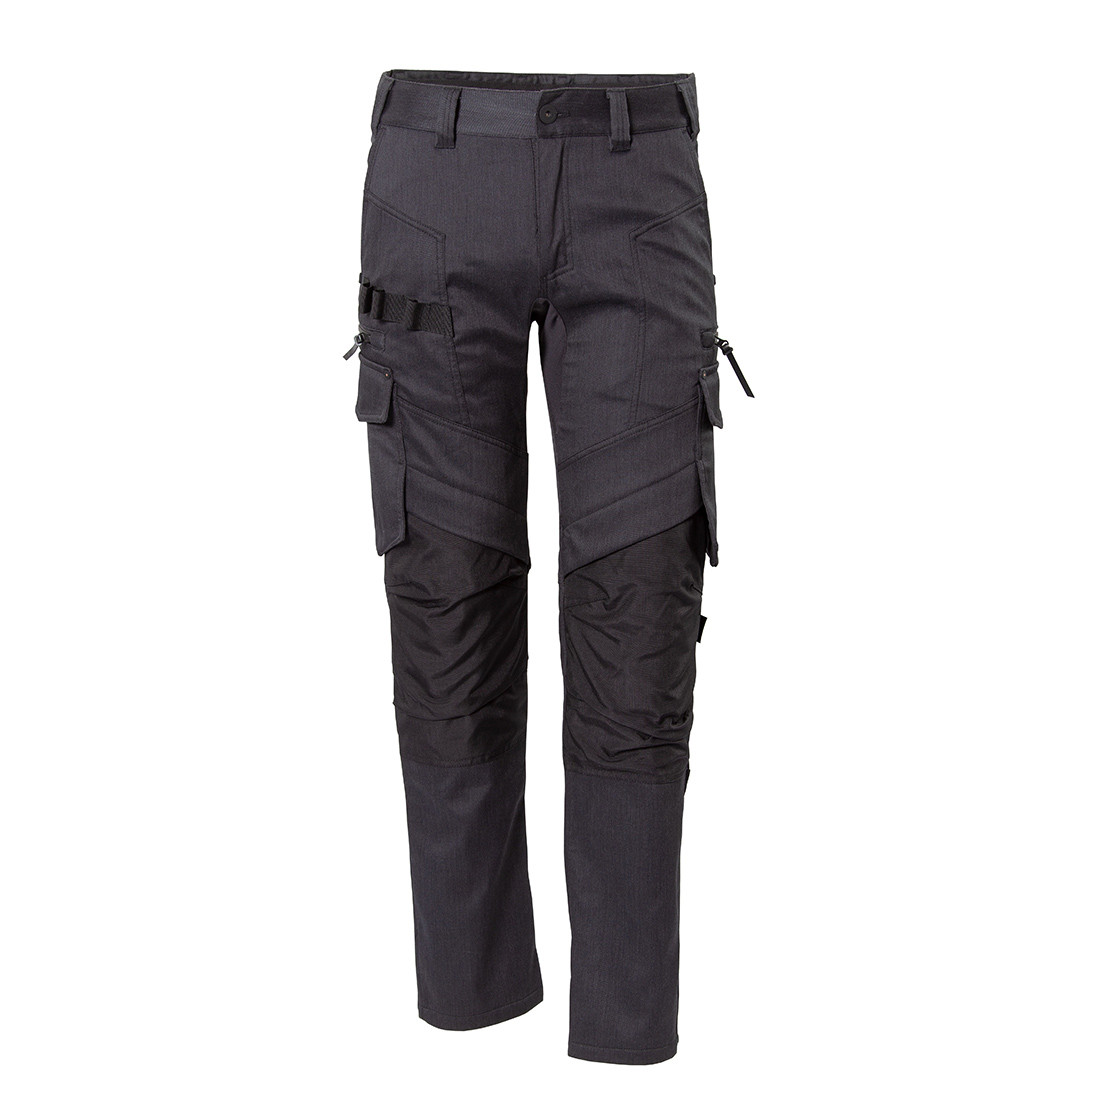 Pantalon de travail hiver - Les vêtements de protection